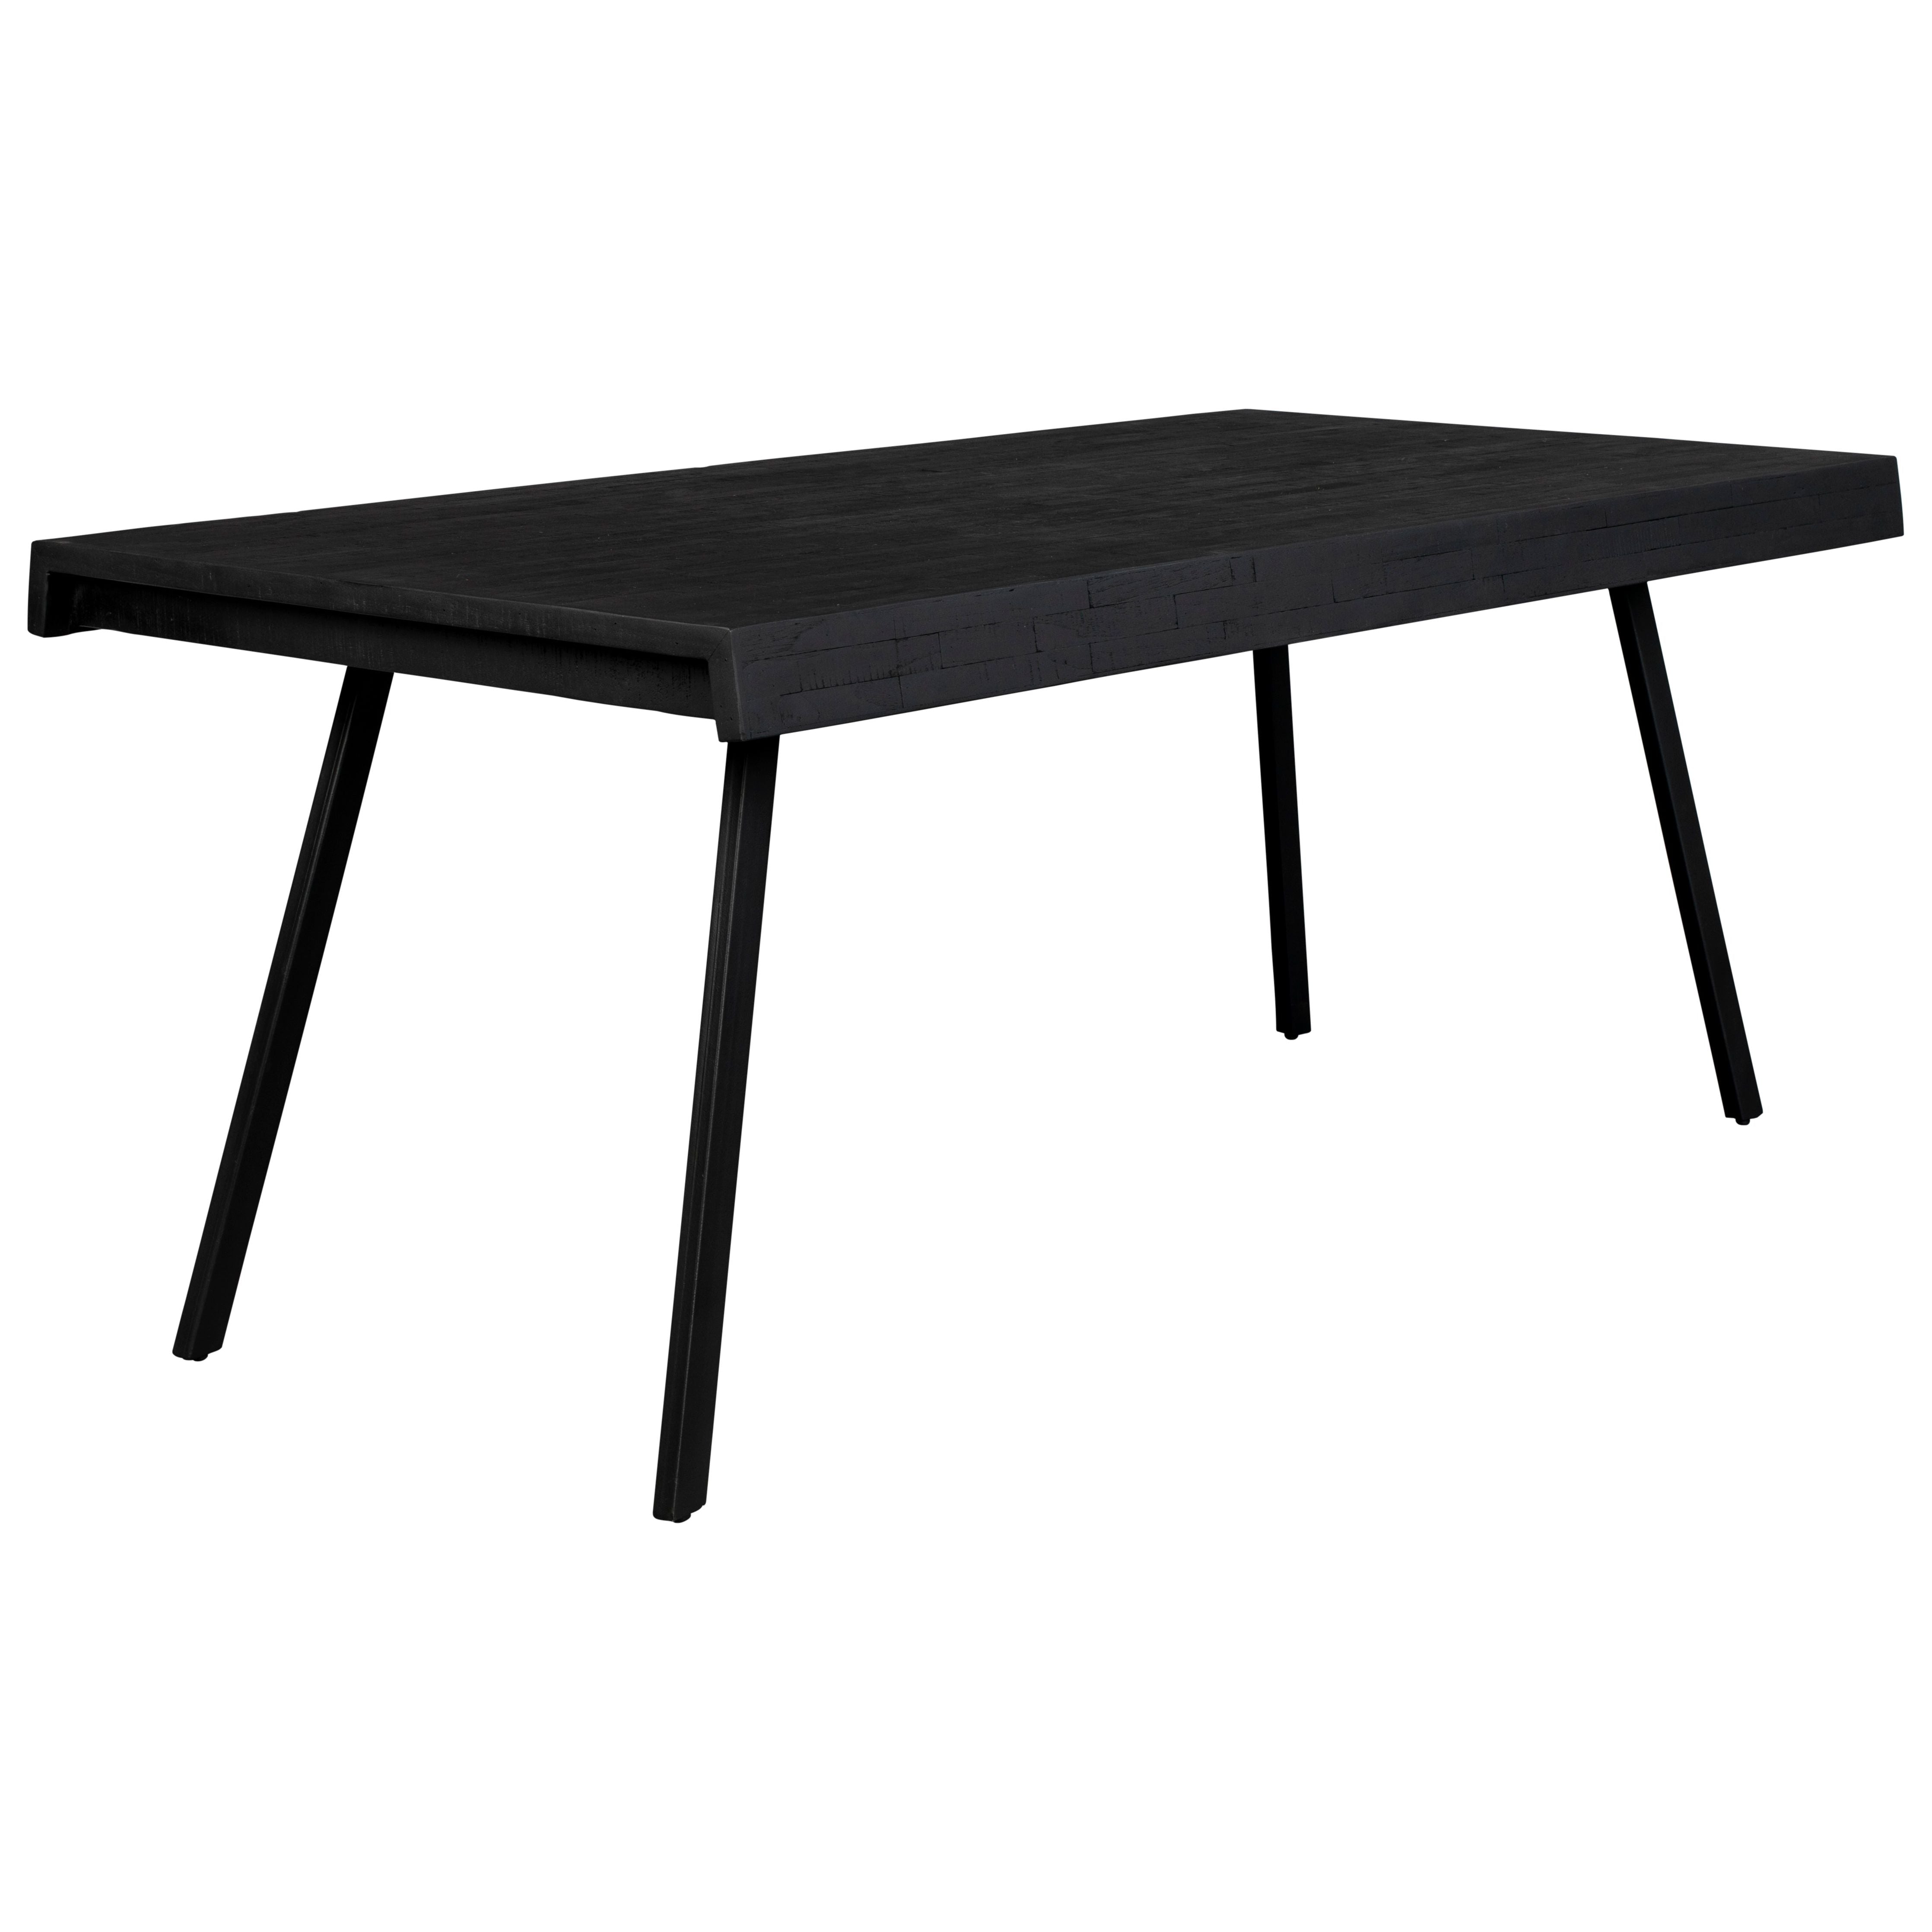 Table suri 160x78 black